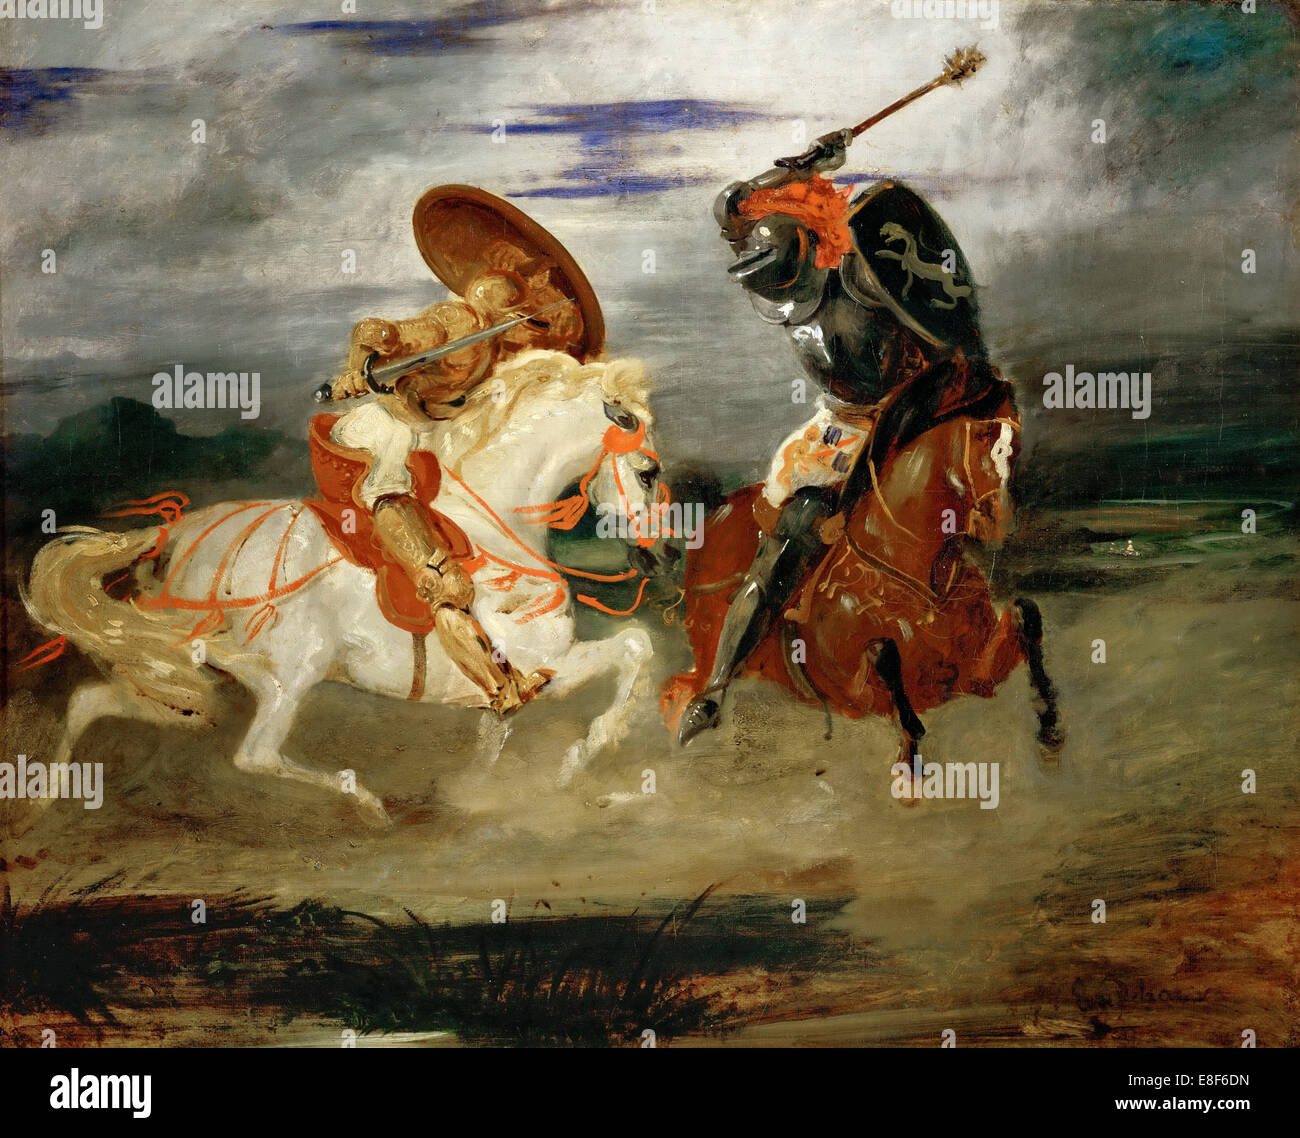 Chevaliers combats dans la campagne. Artiste : Delacroix, Eugène (1798-1863) Banque D'Images